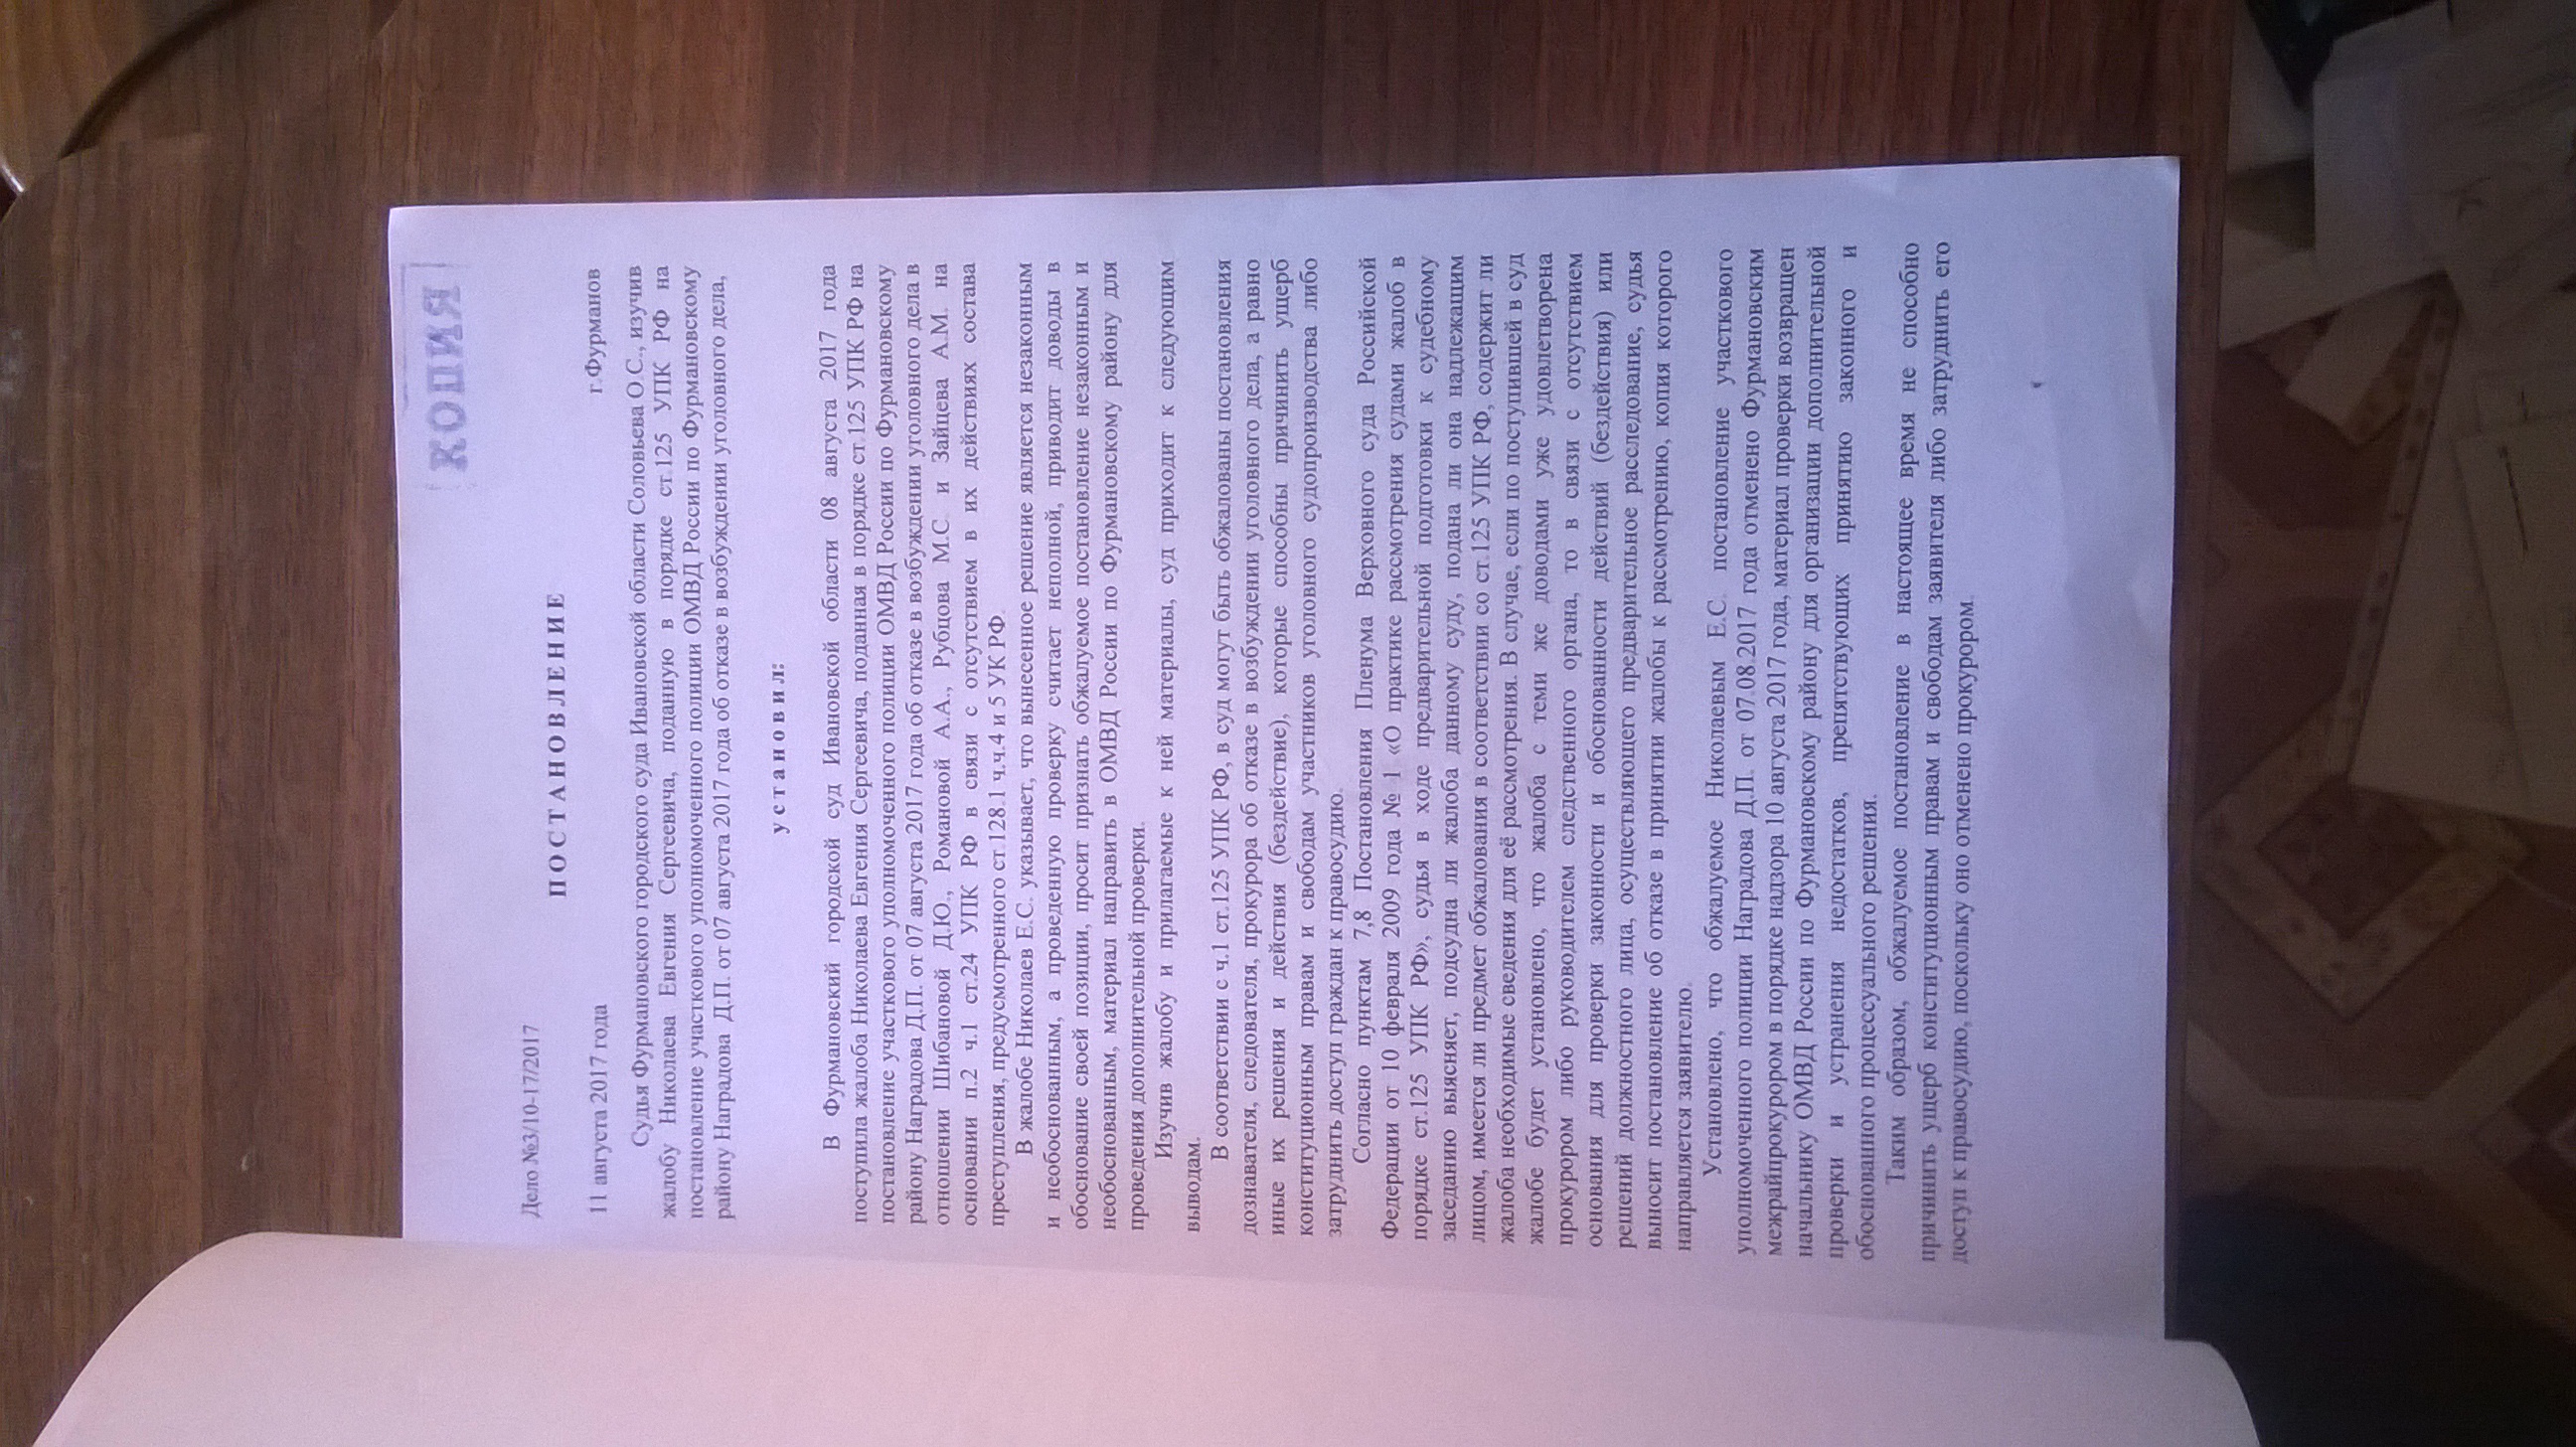 Постановление Фурмановского городского суда(ID документа 167) (Дата документа 11.08.2017) Страница 1